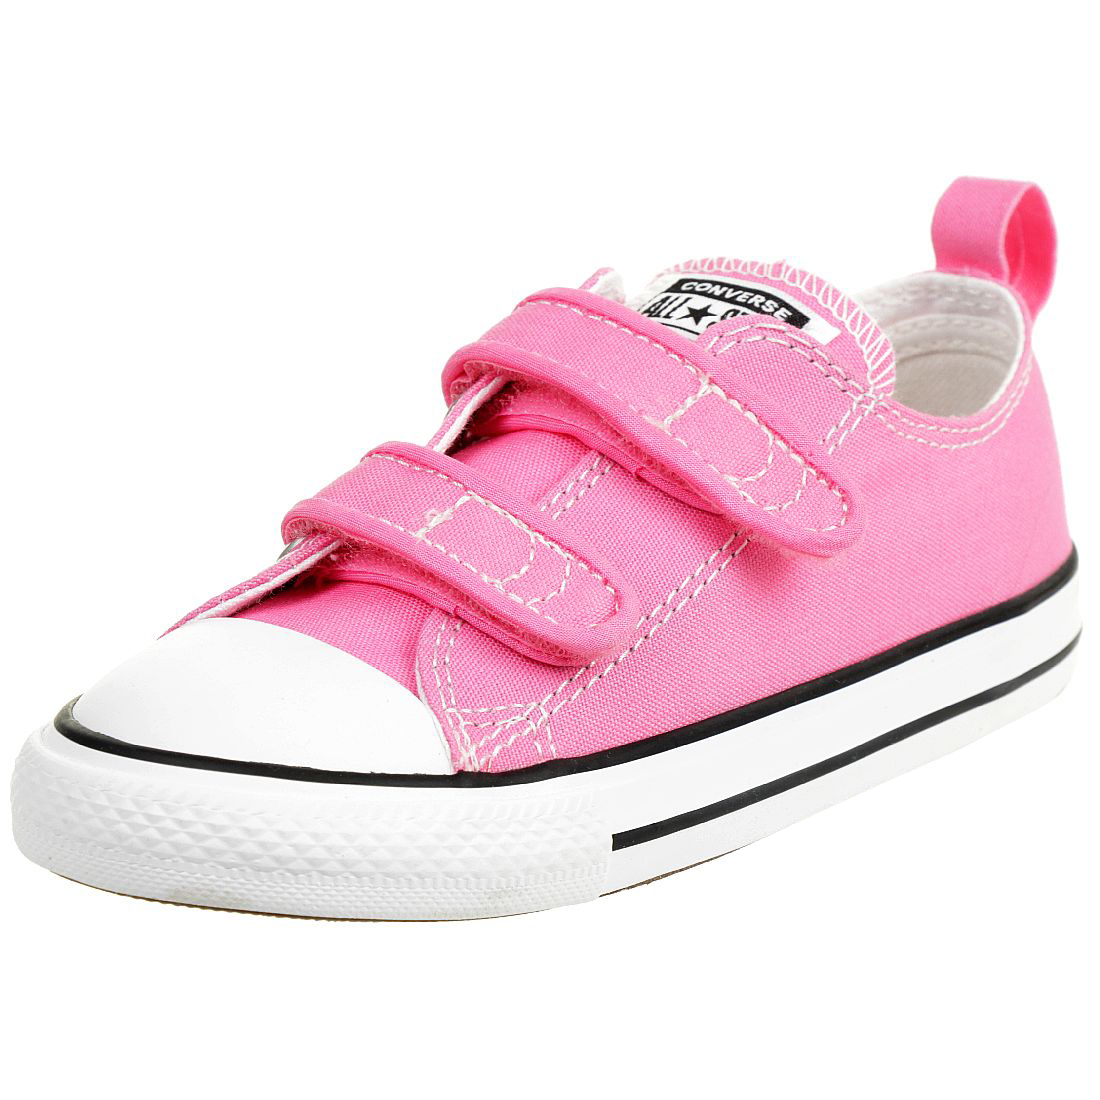 Converse CT 2V OX Chucks Pink Mädchen Baby Sneaker Klett canvas pink 709447C von Converse